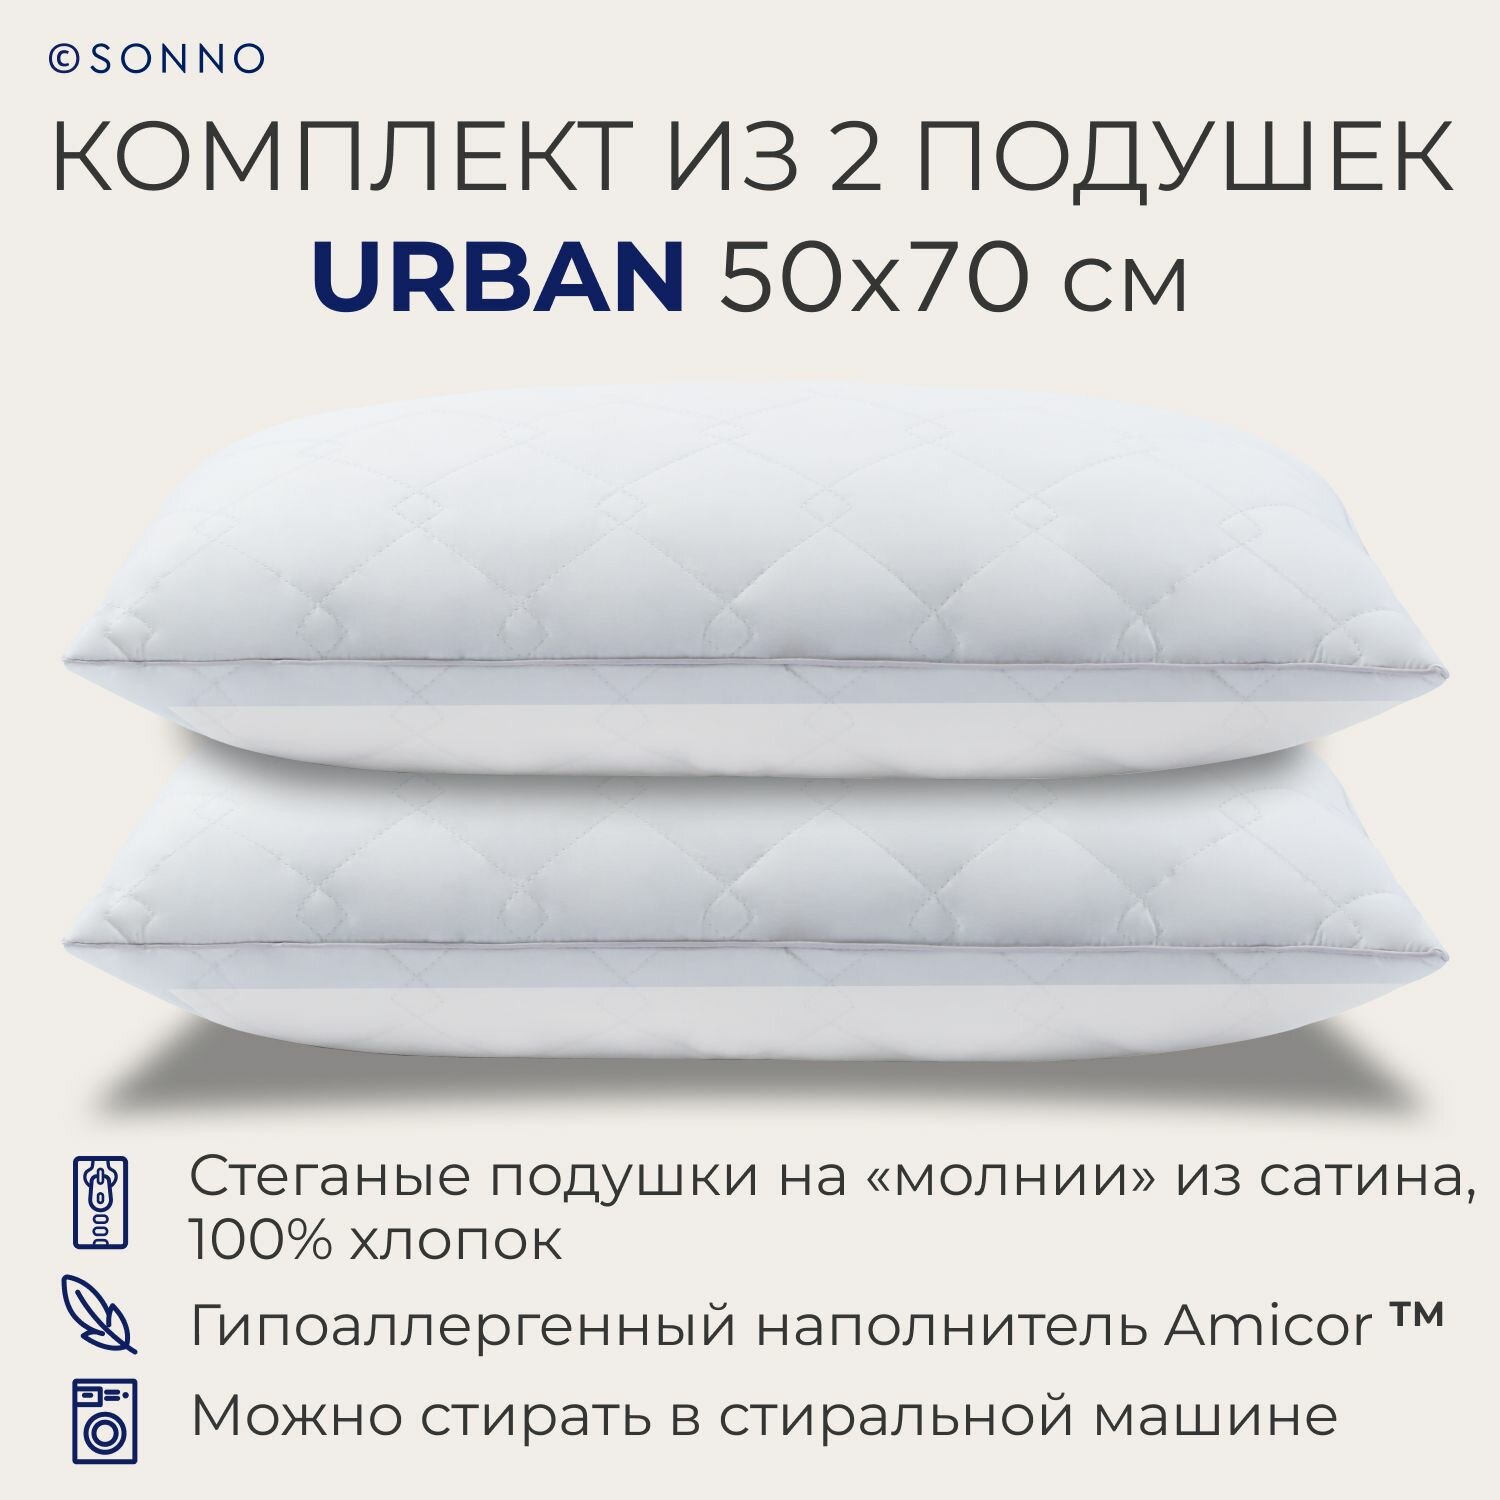 Комплект из двух подушек для сна SONNO URBAN 50x70 см , гипоаллергенный наполнитель Amicor TM, Ослепительно белый